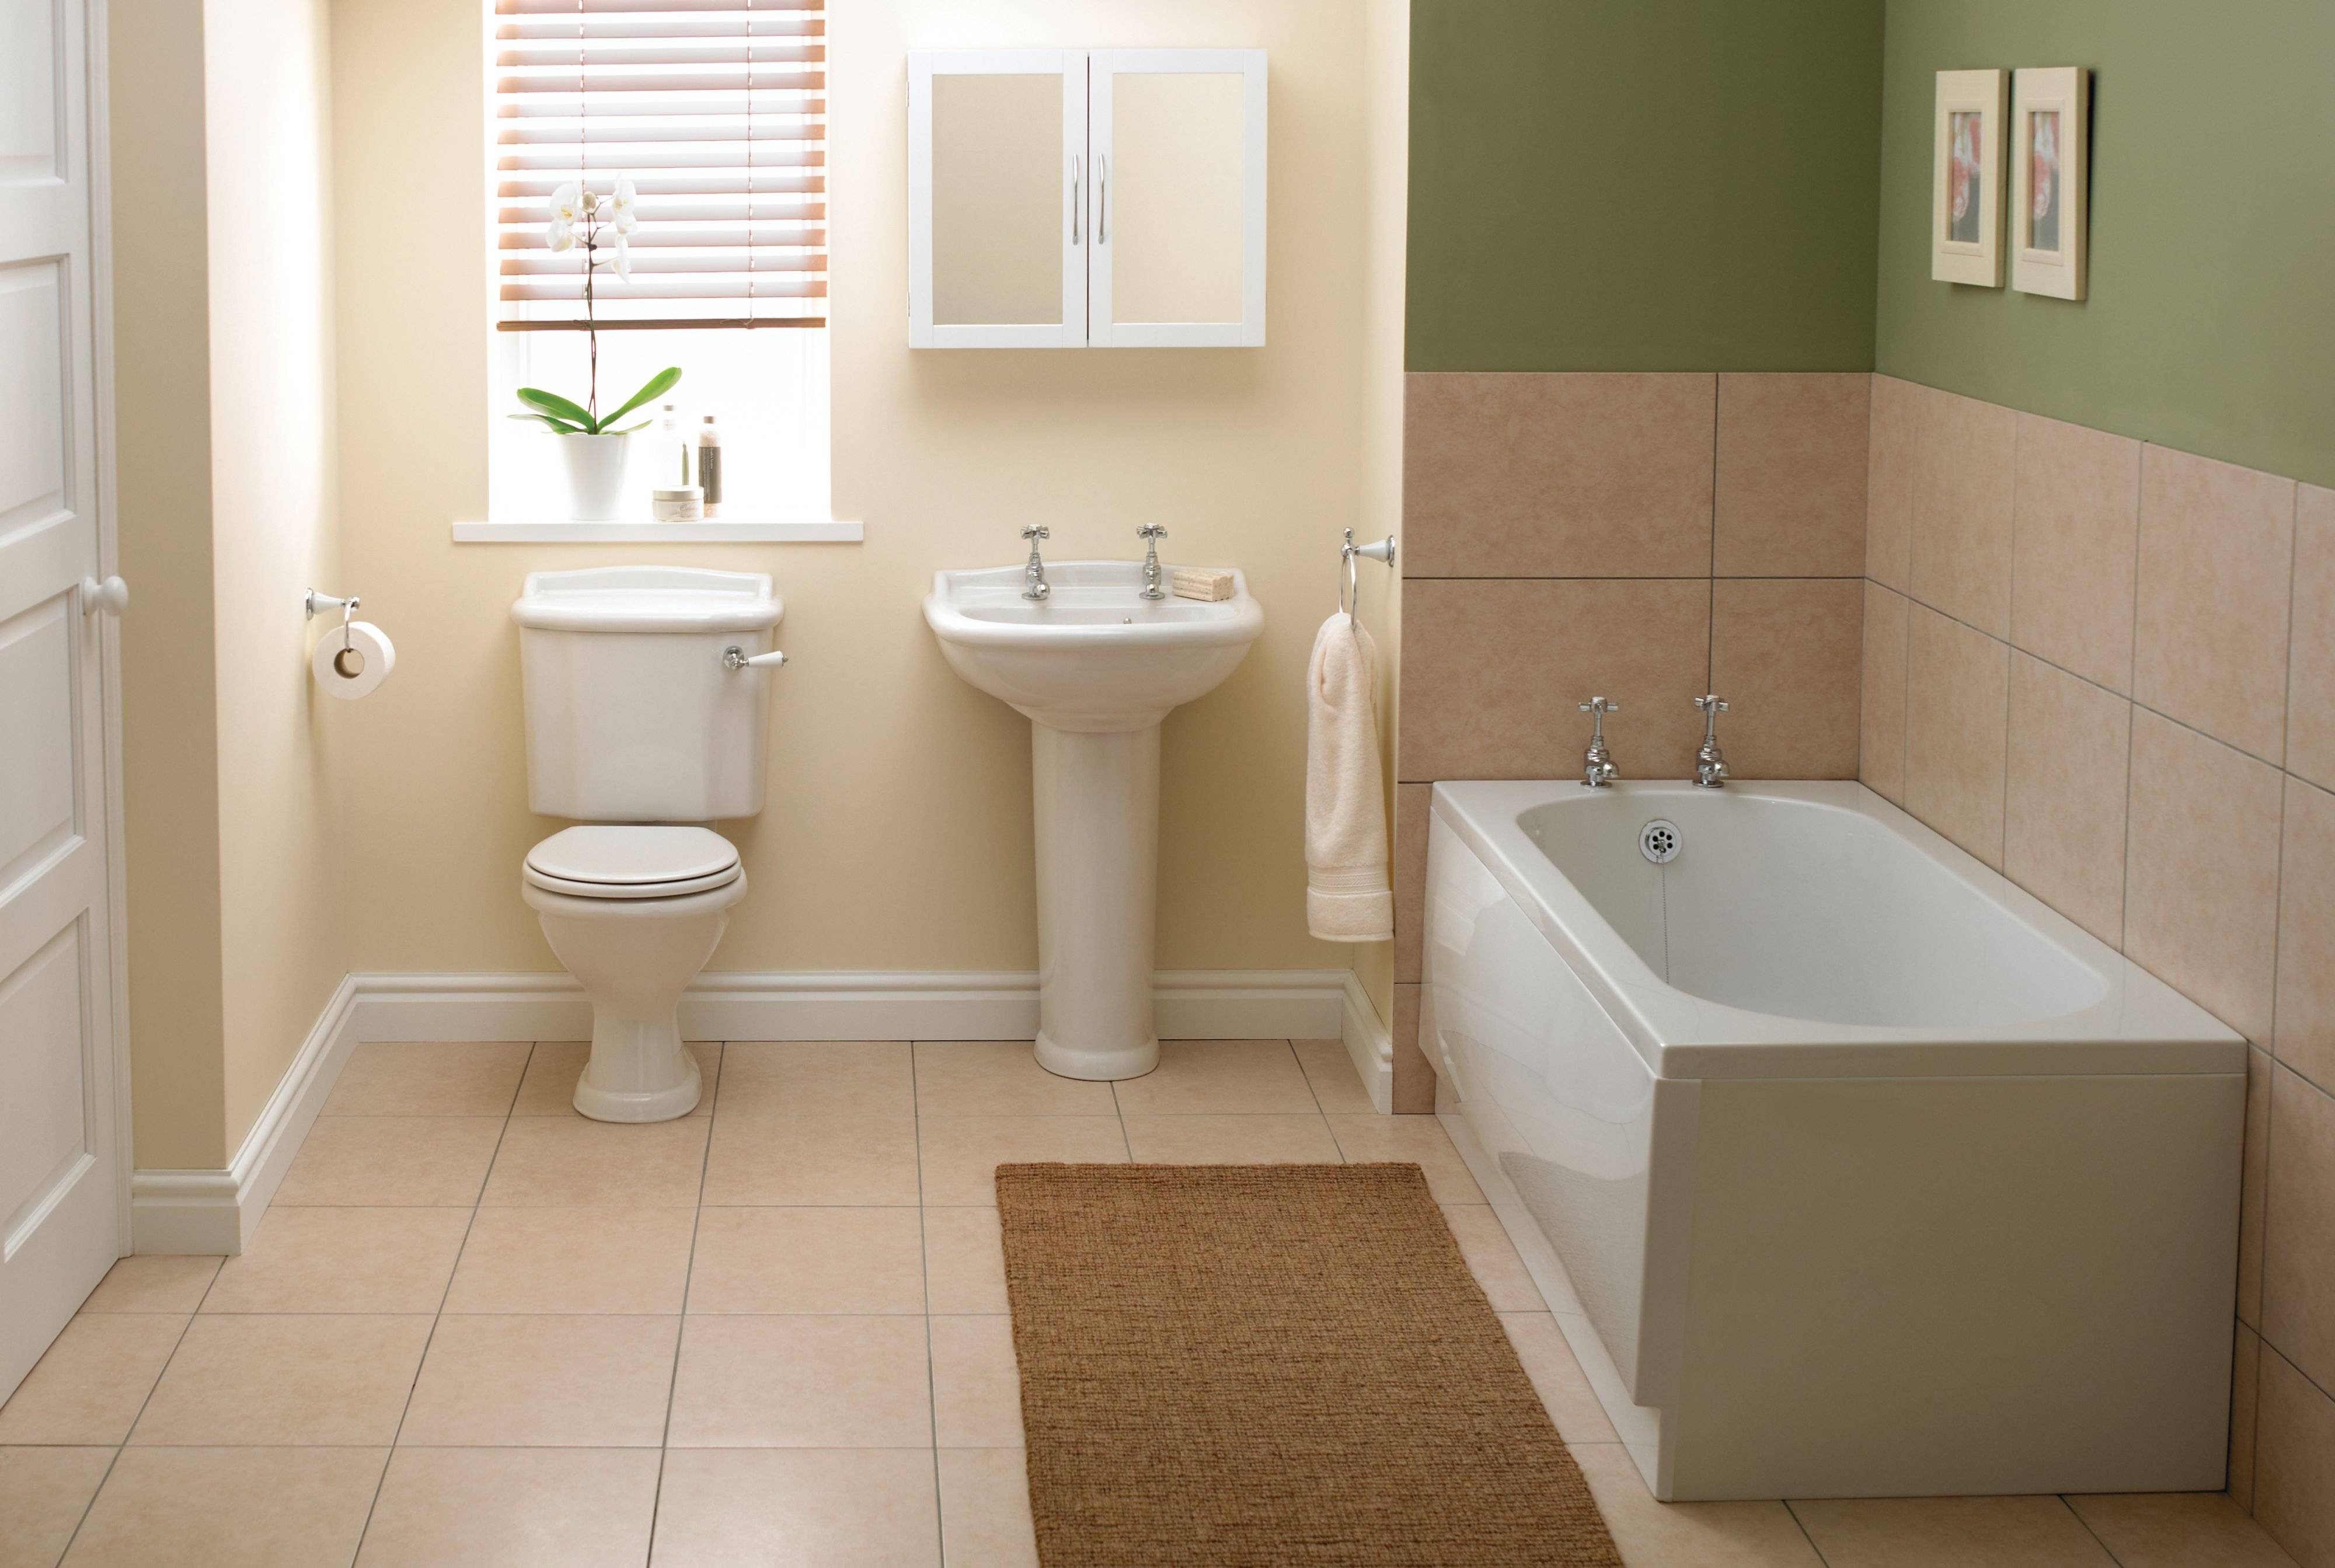 Дизайн ванной комнаты - идеи обустройства и лучшие варианты оформления (120 фото)